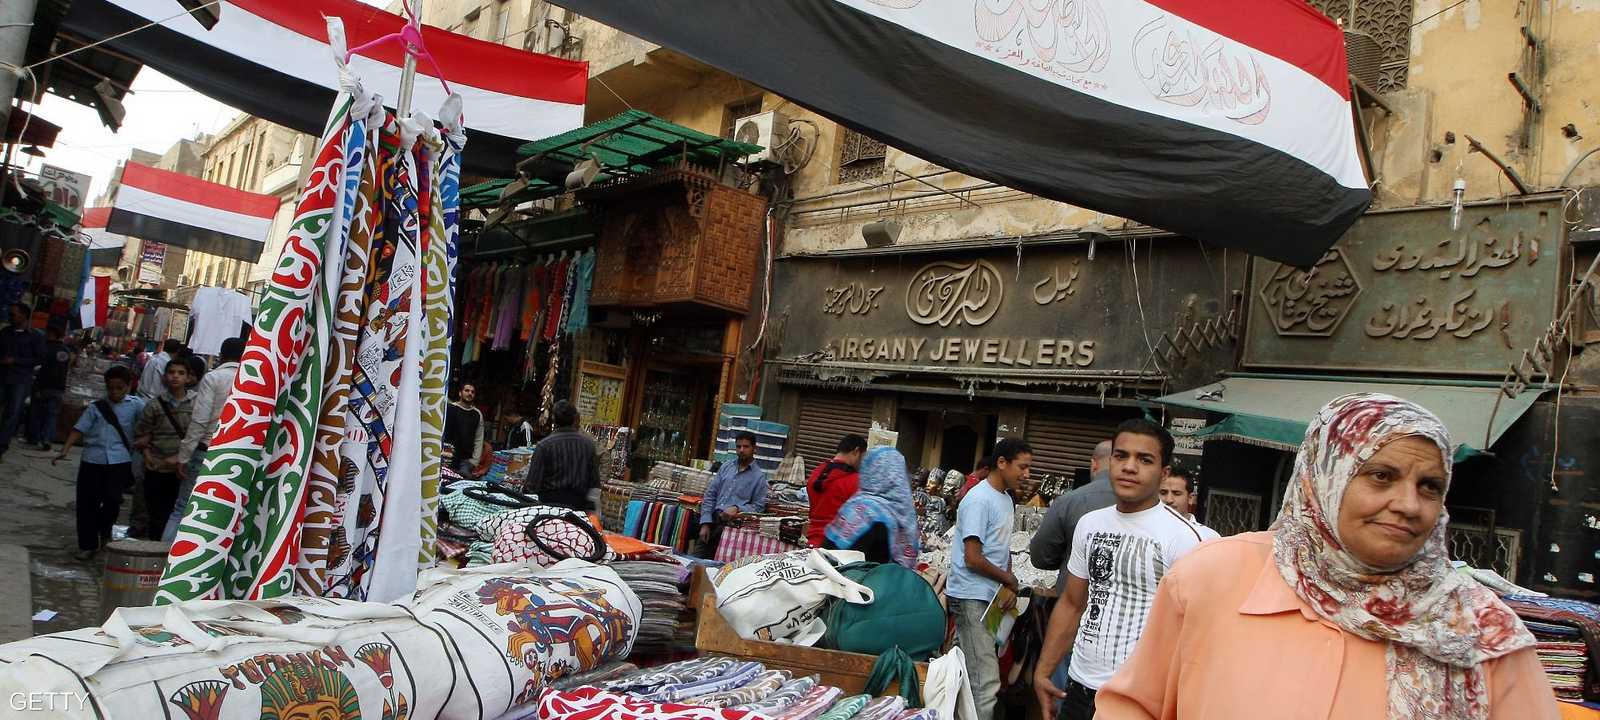 توقعات بتحسن كبير في نمو اقتصاد مصر خلال السنوات القادمة